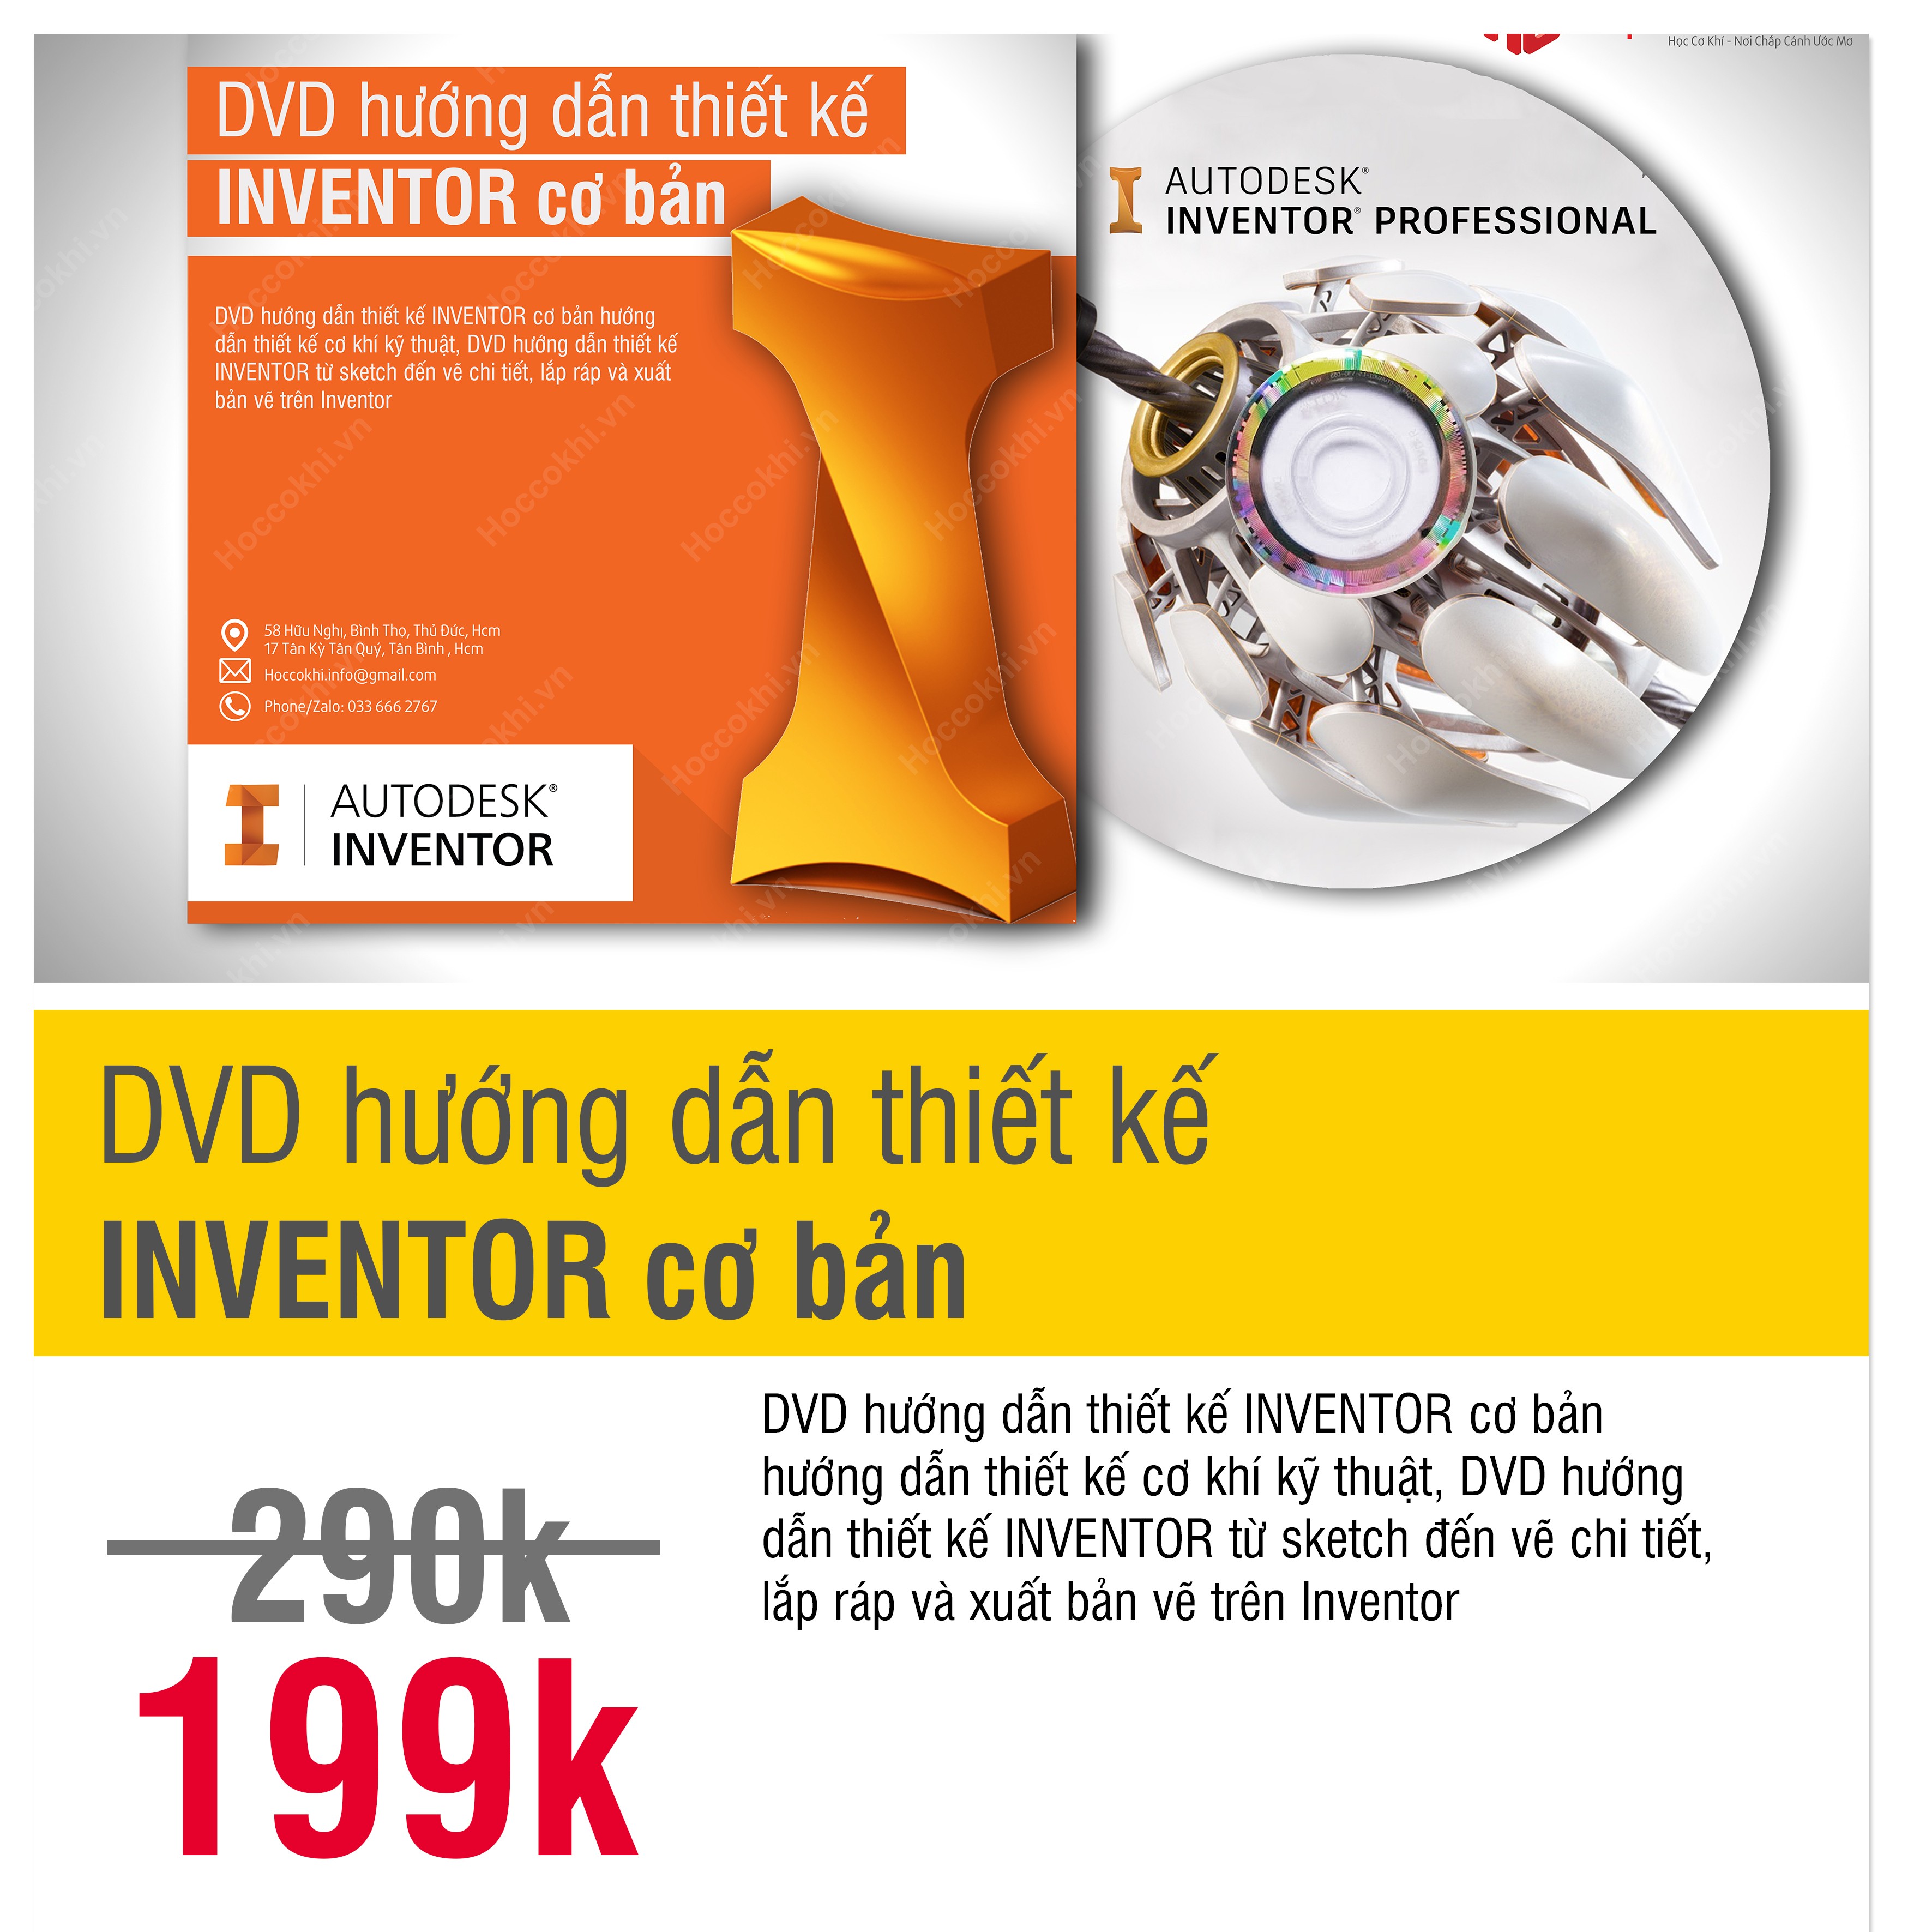 DVD hướng dẫn thiết kế INVENTOR cơ bản